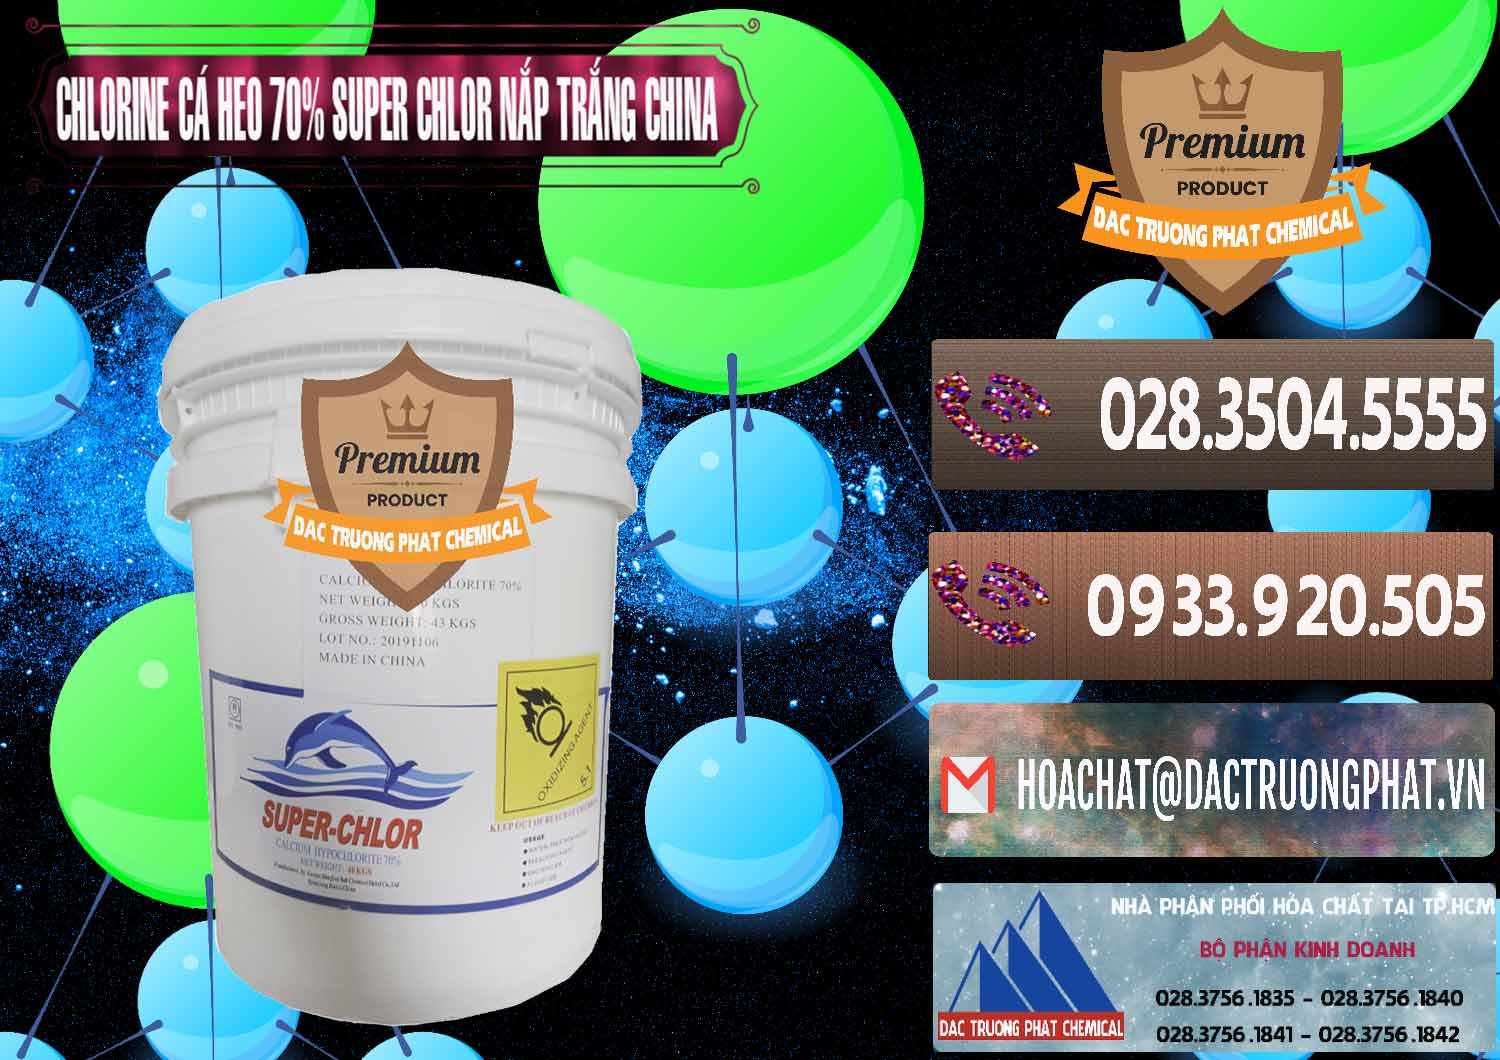 Nơi nhập khẩu và bán Clorin - Chlorine Cá Heo 70% Super Chlor Nắp Trắng Trung Quốc China - 0240 - Nơi cung cấp và bán hóa chất tại TP.HCM - hoachatviet.net